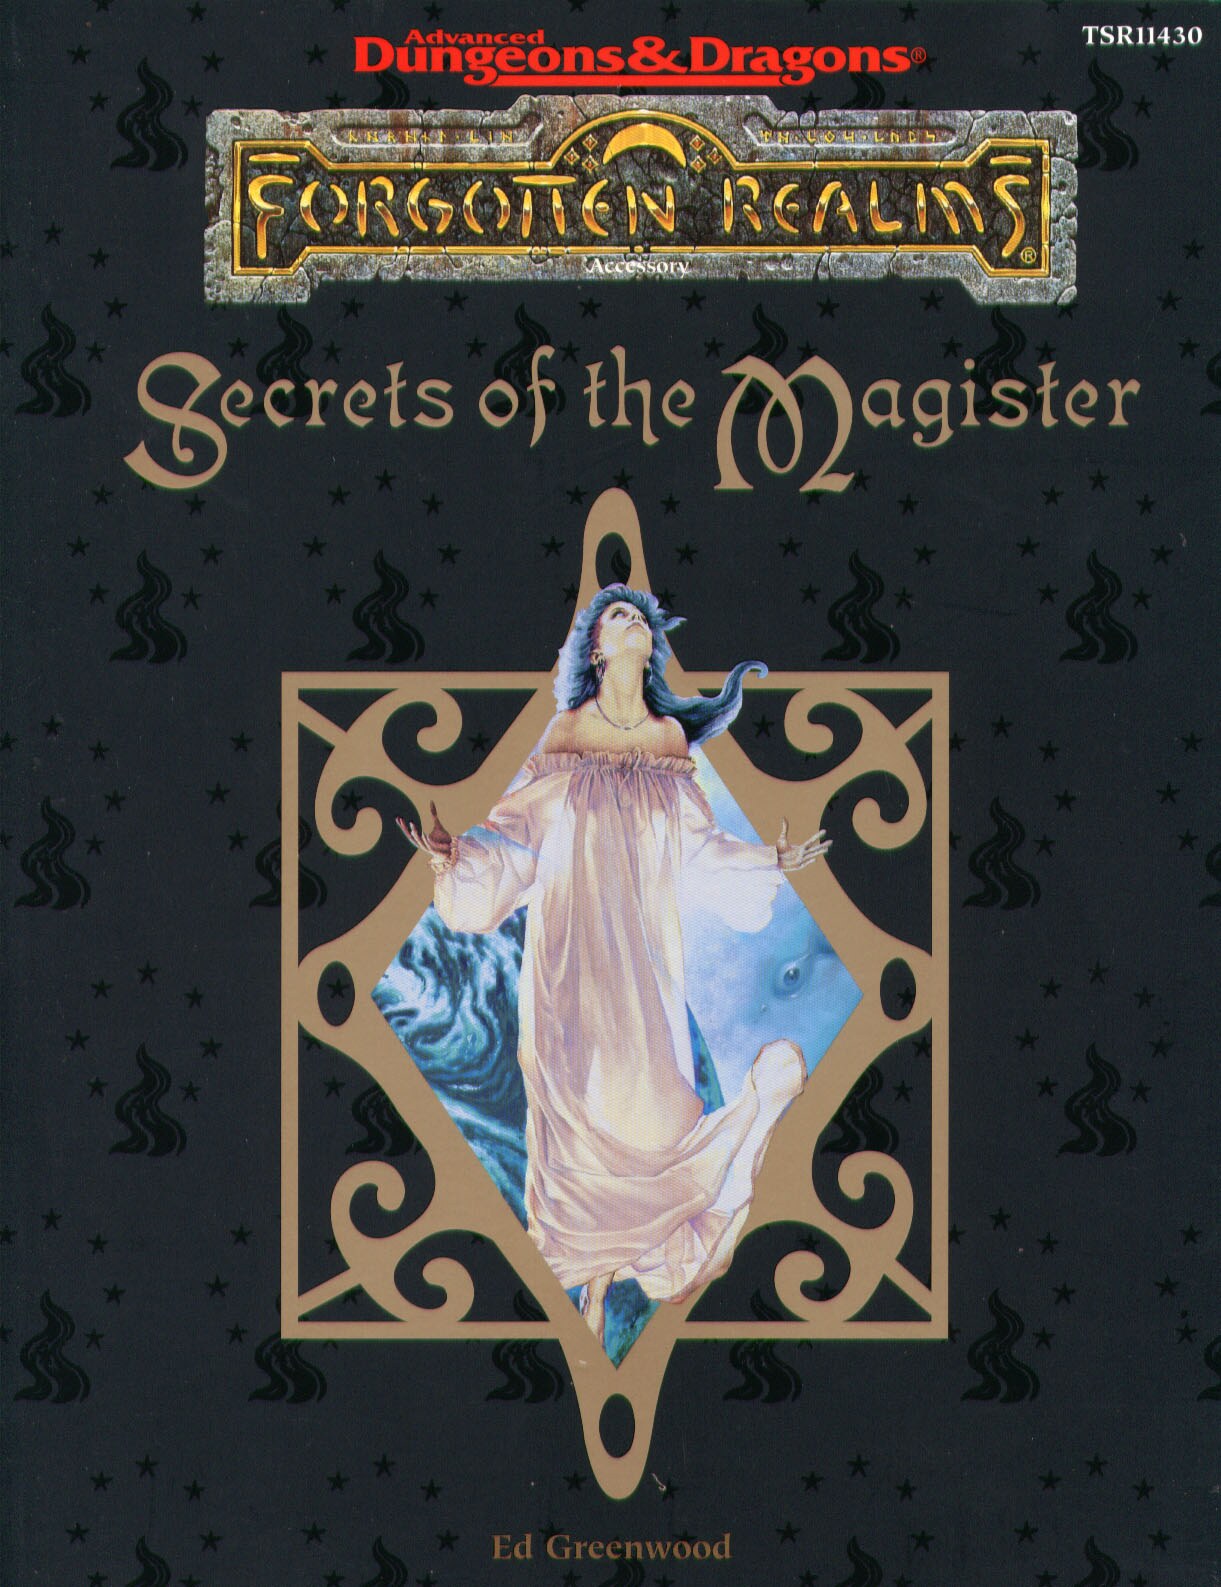 TSR 11430 FOR13 Secrets of the Magister